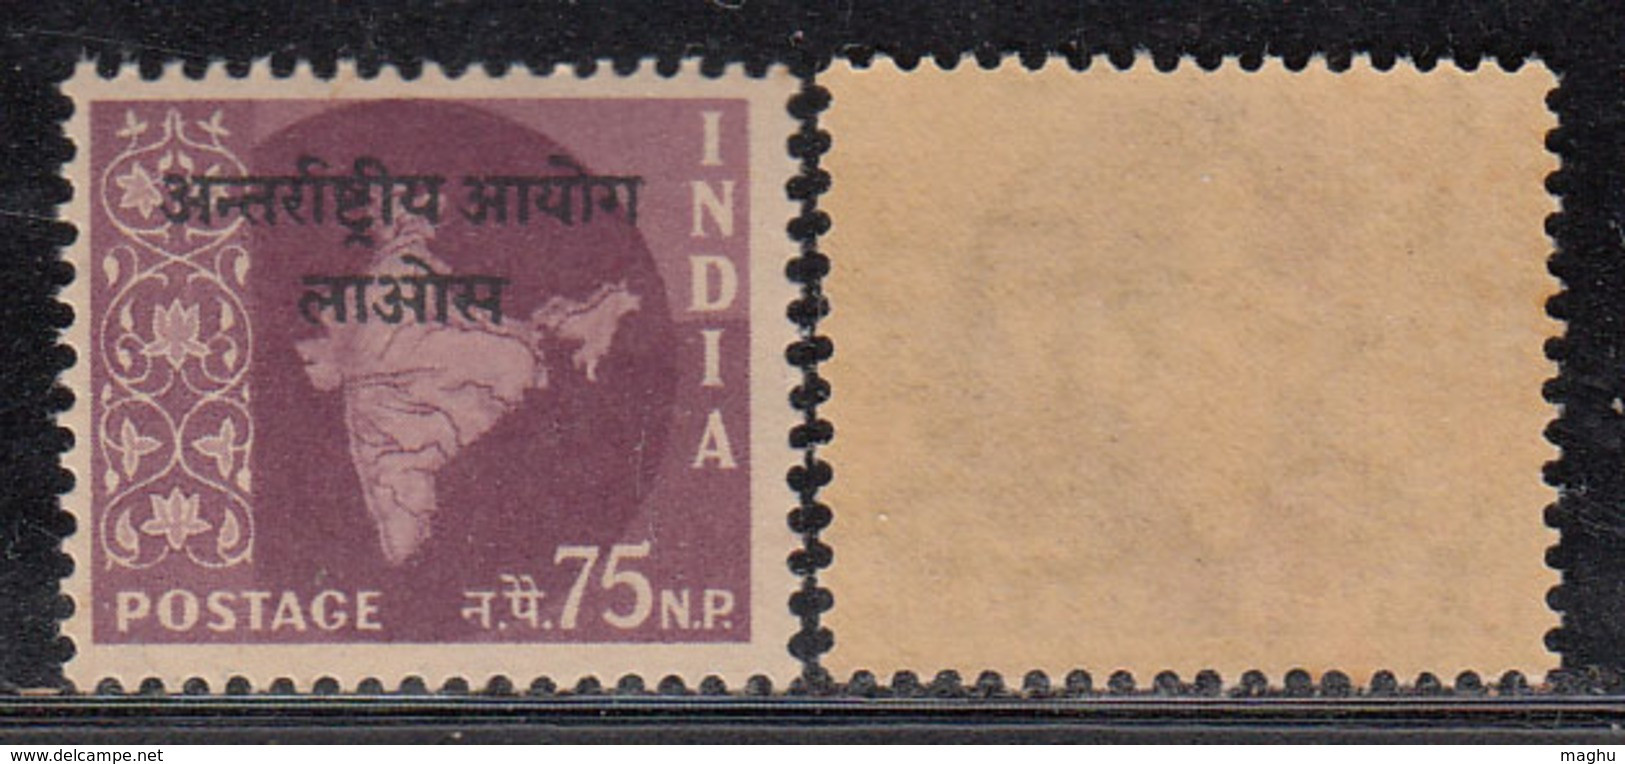 75np Ovpt  Laos On Map Series,  India MNH 1962 - 1965, Ashokan Watermark, - Militärpostmarken